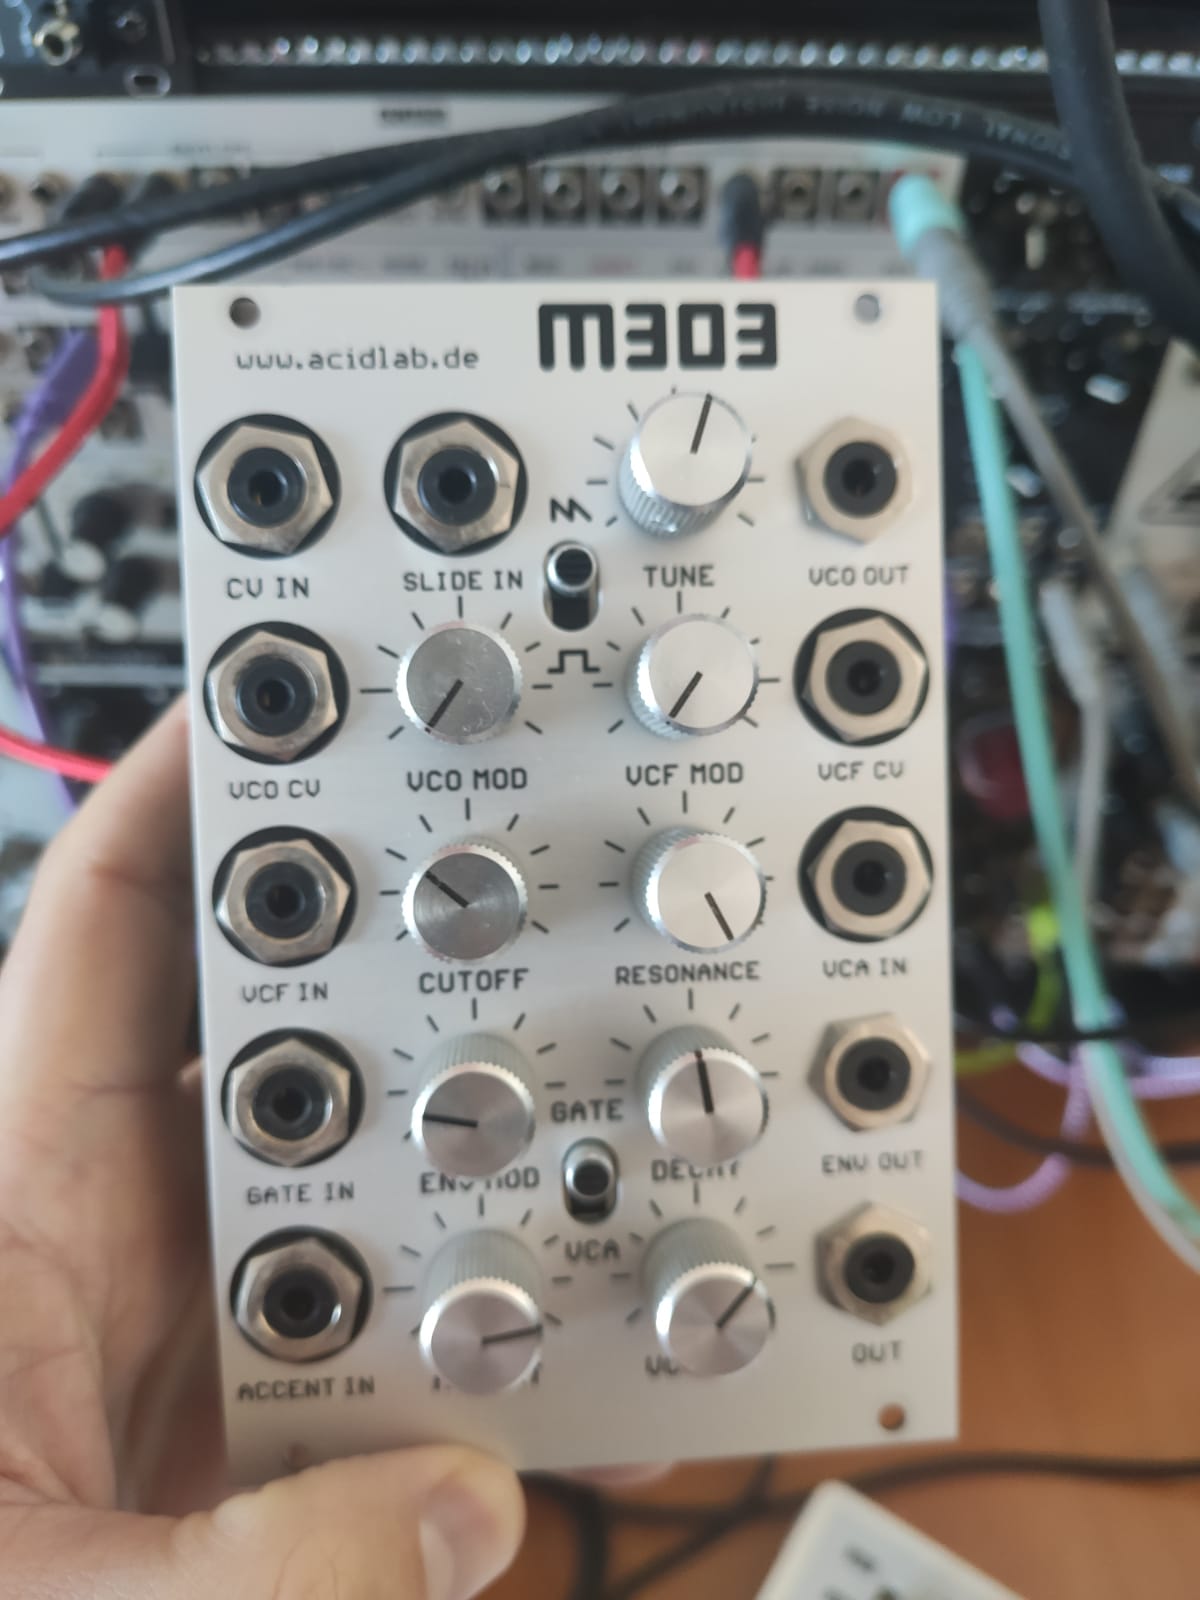 M303 - Acidlab M303 - Audiofanzine